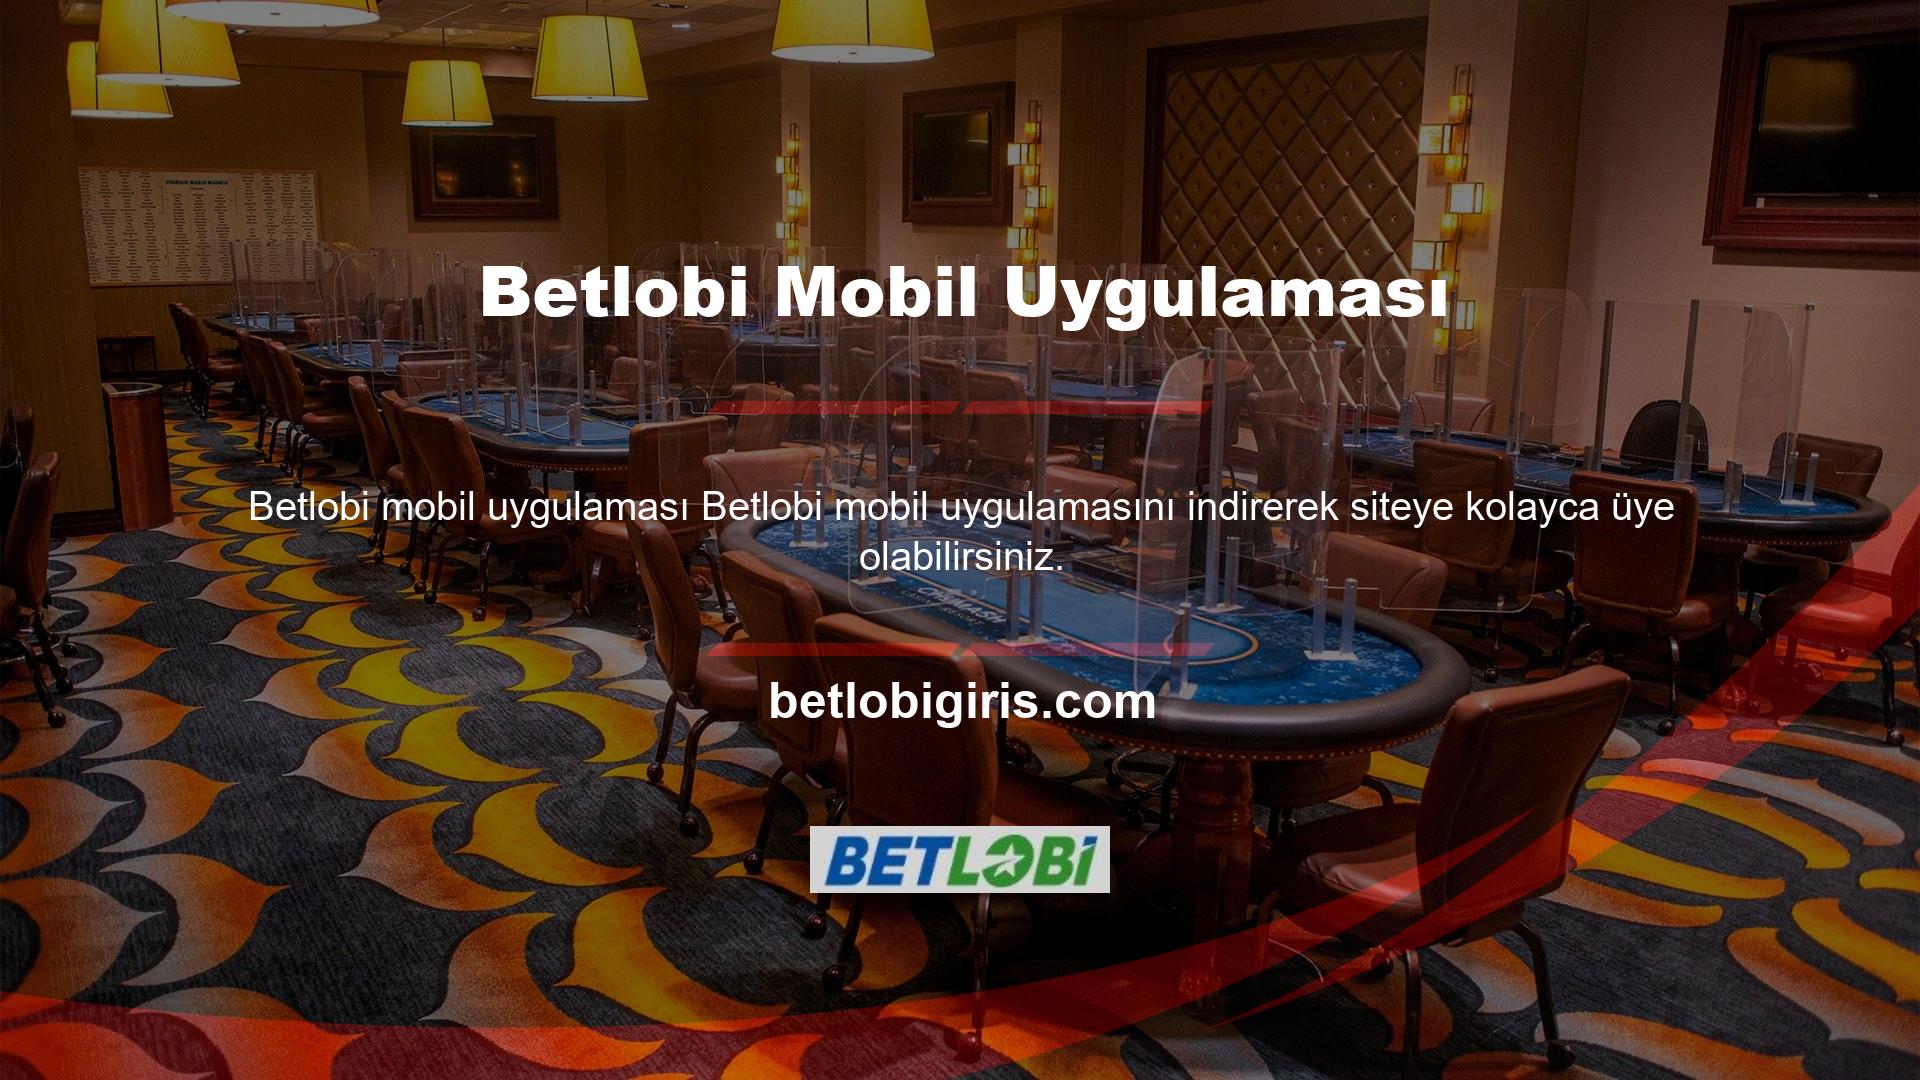 Betlobi oyun sitesinin tüm hizmetlerine akıllı cihazınızdan erişebilirsiniz